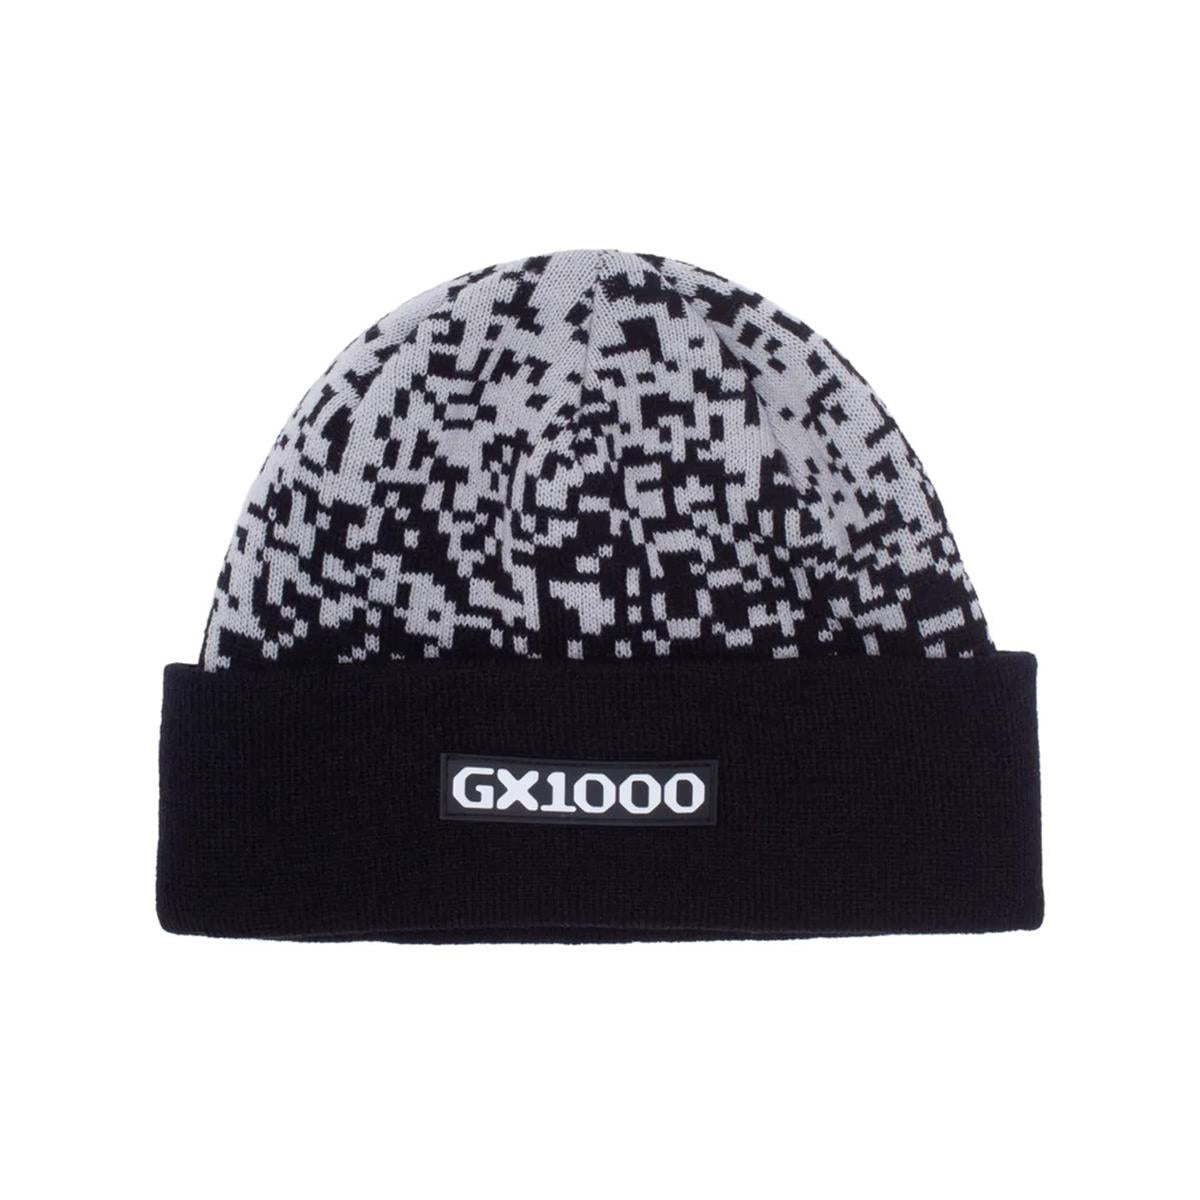 GX1000 - Bonnet de Pluie - Noir - Fabriqué en Corée 100% Coton - Noir